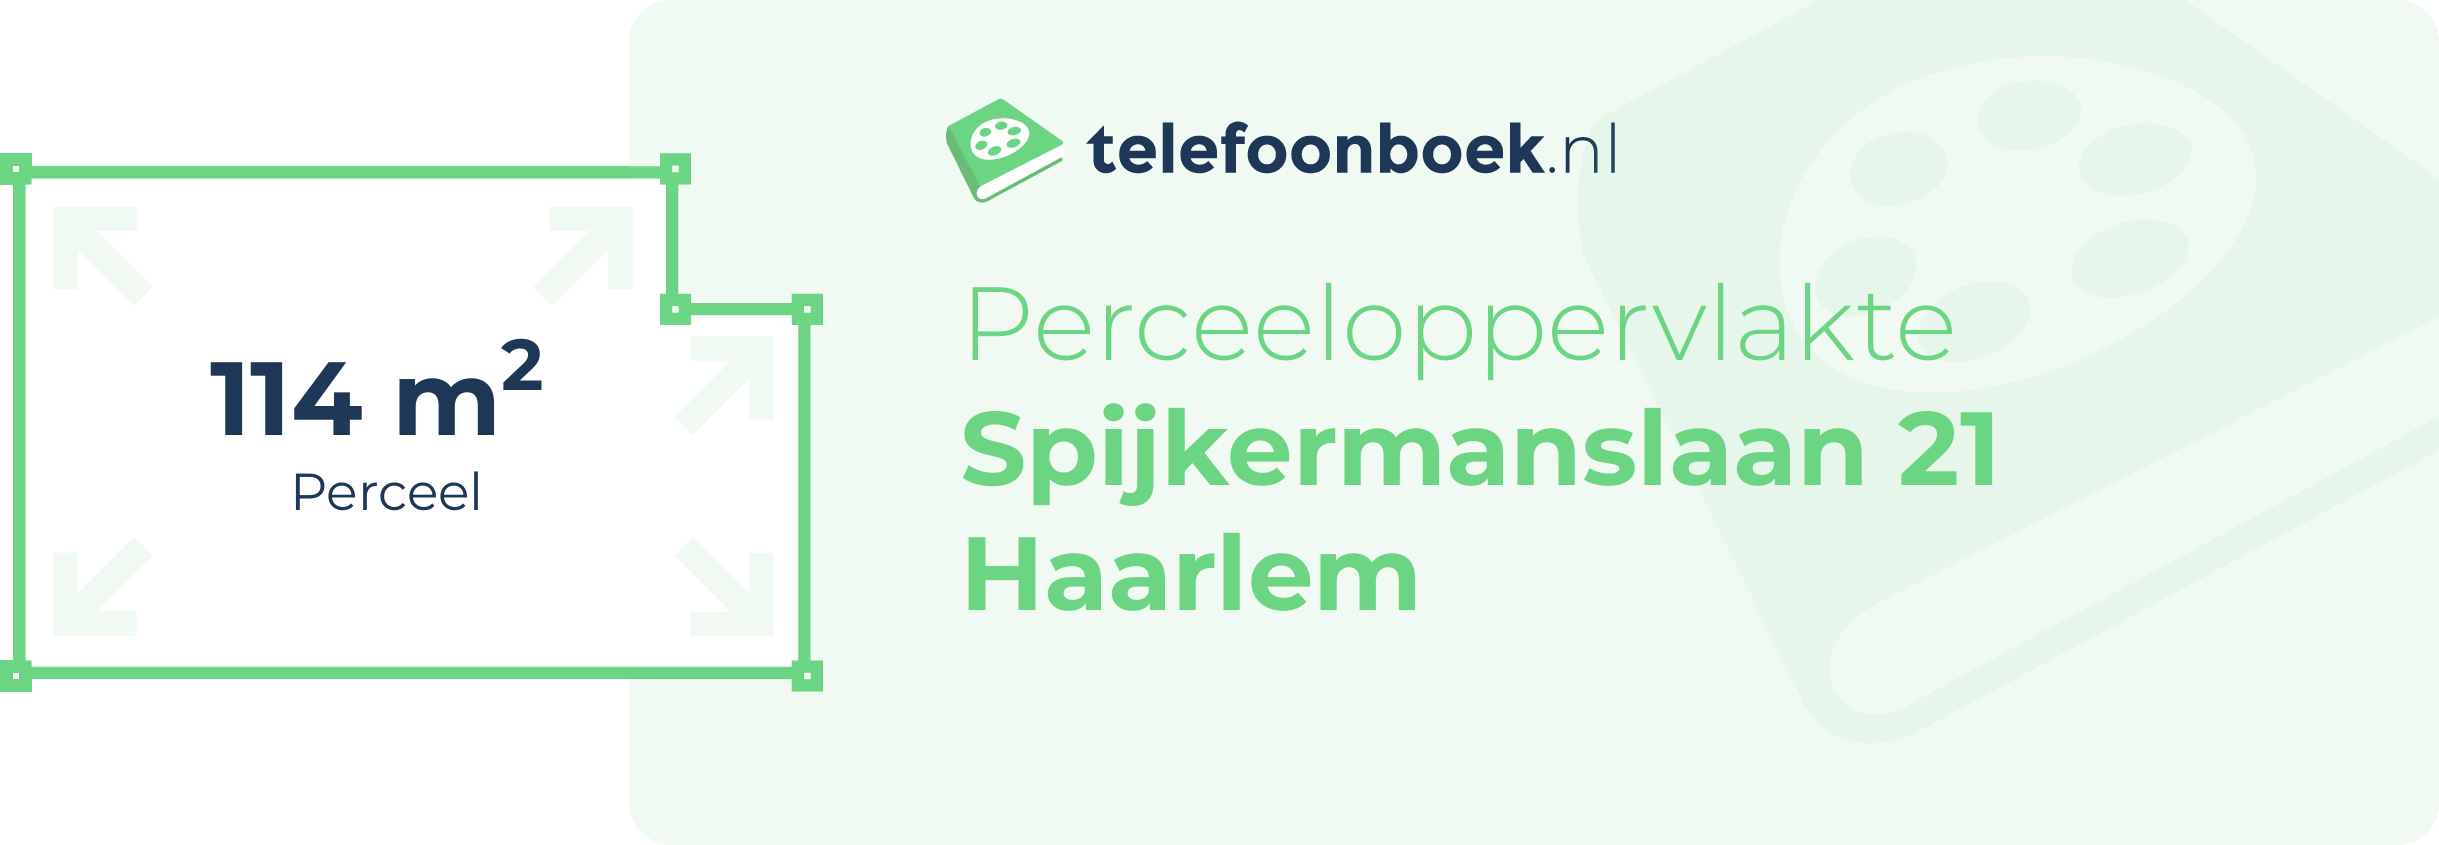 Perceeloppervlakte Spijkermanslaan 21 Haarlem